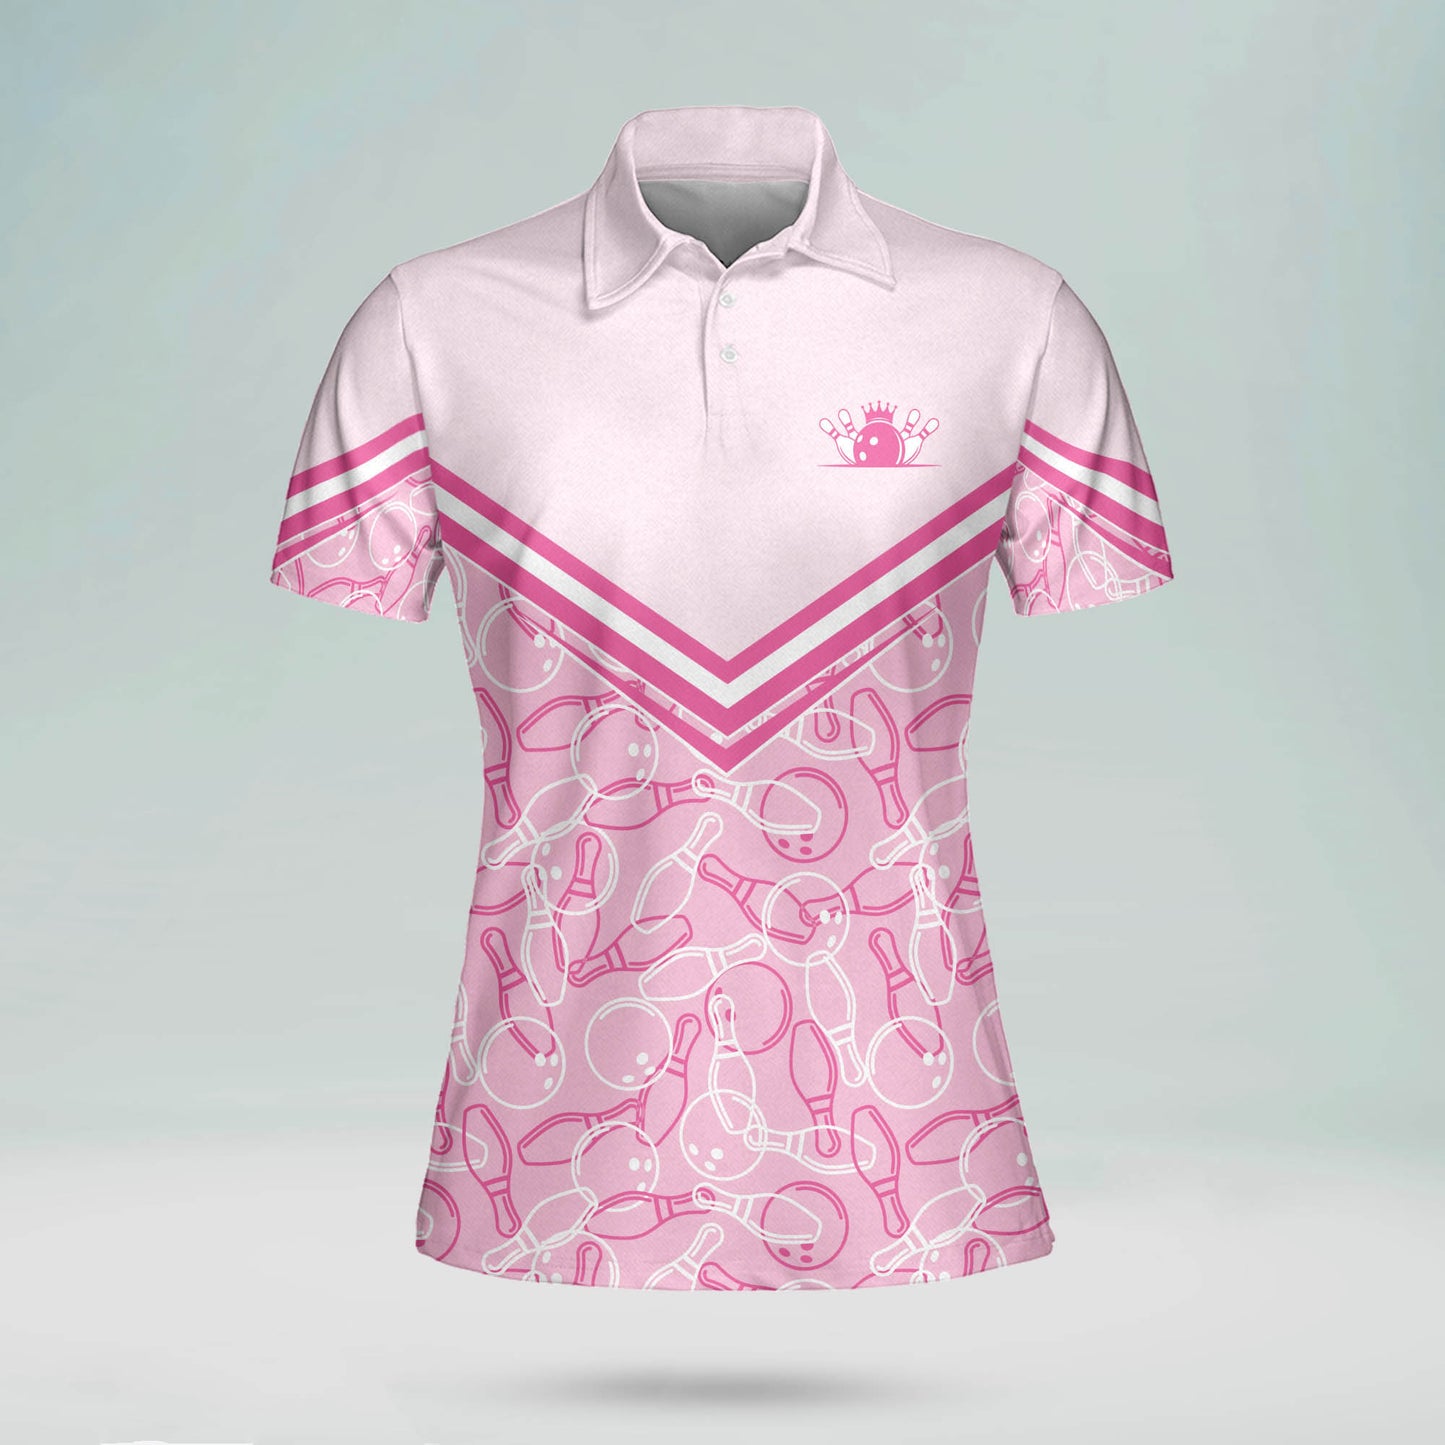 Custom Bowling Shirts For Women - 3D Pin Pink Bowling Shirt Pattern - Light Pink Bowling Shirts Women - Bowling Polo Shirts BW0062